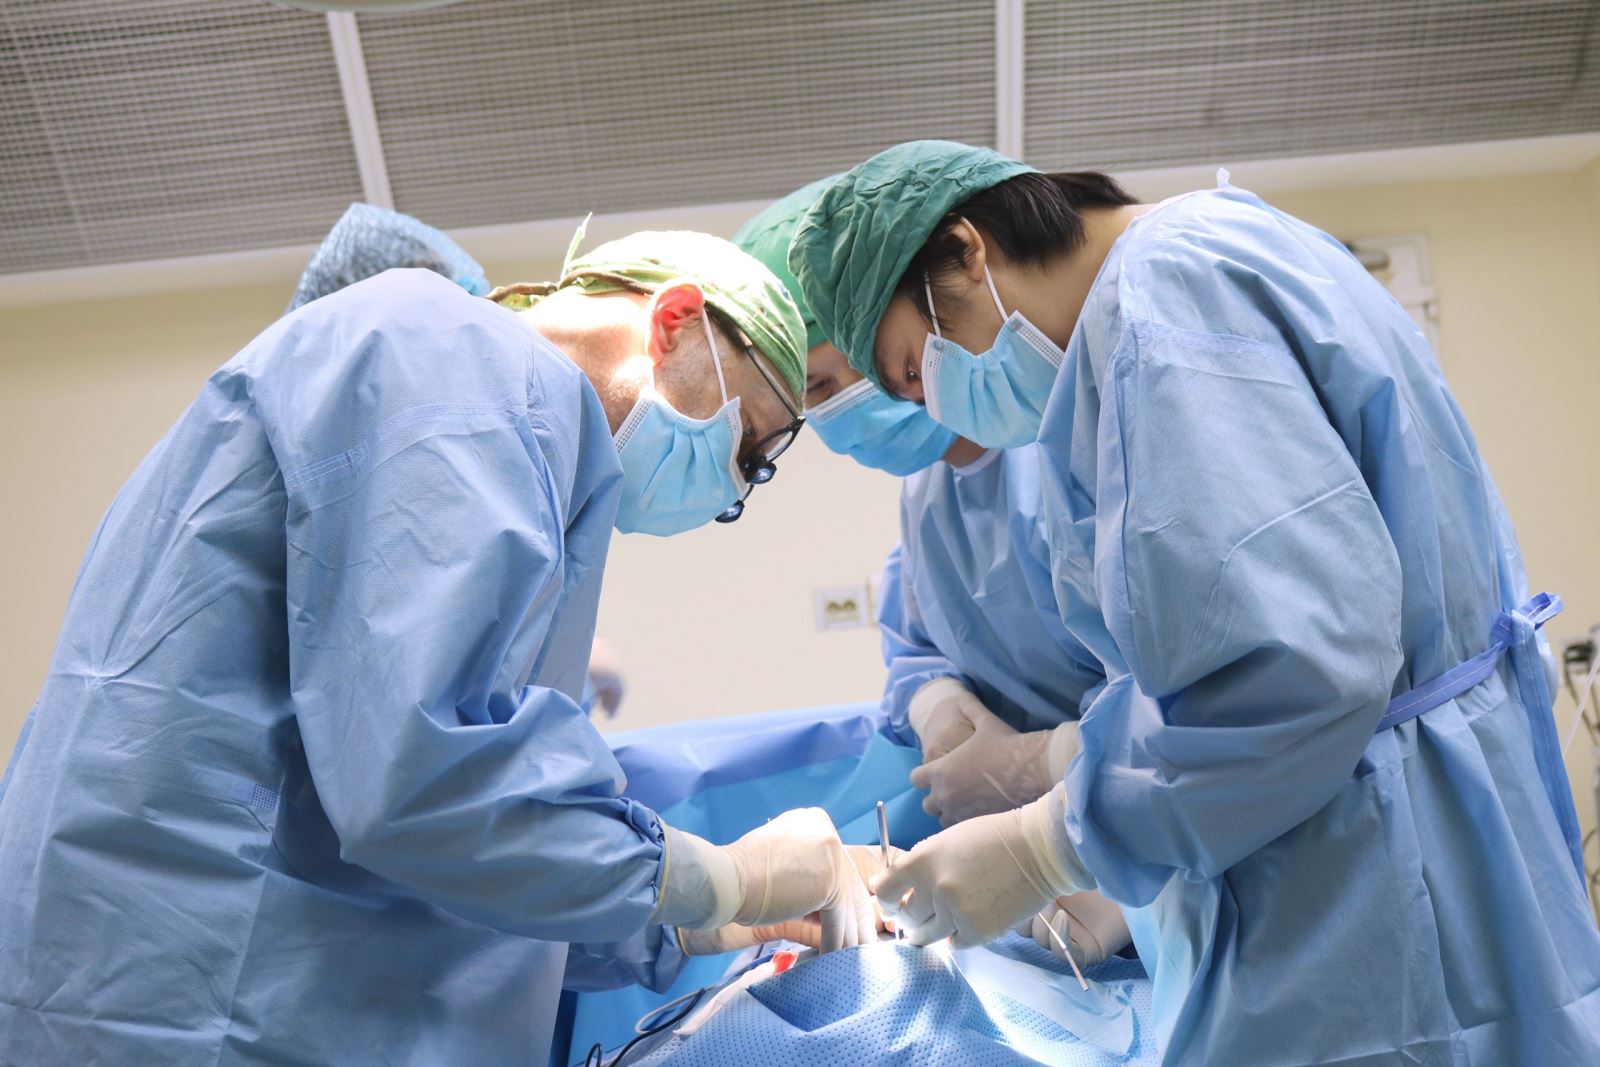 Các bác sĩ Bệnh viện Việt Nam - Thụy Điển Uông Bí làm chủ các kỹ thuật tạo hình cho trẻ em dị tật khe hở môi, khe hở vòm miệng dưới sự tư vấn điều trị của các chuyên gia Thụy Điển.